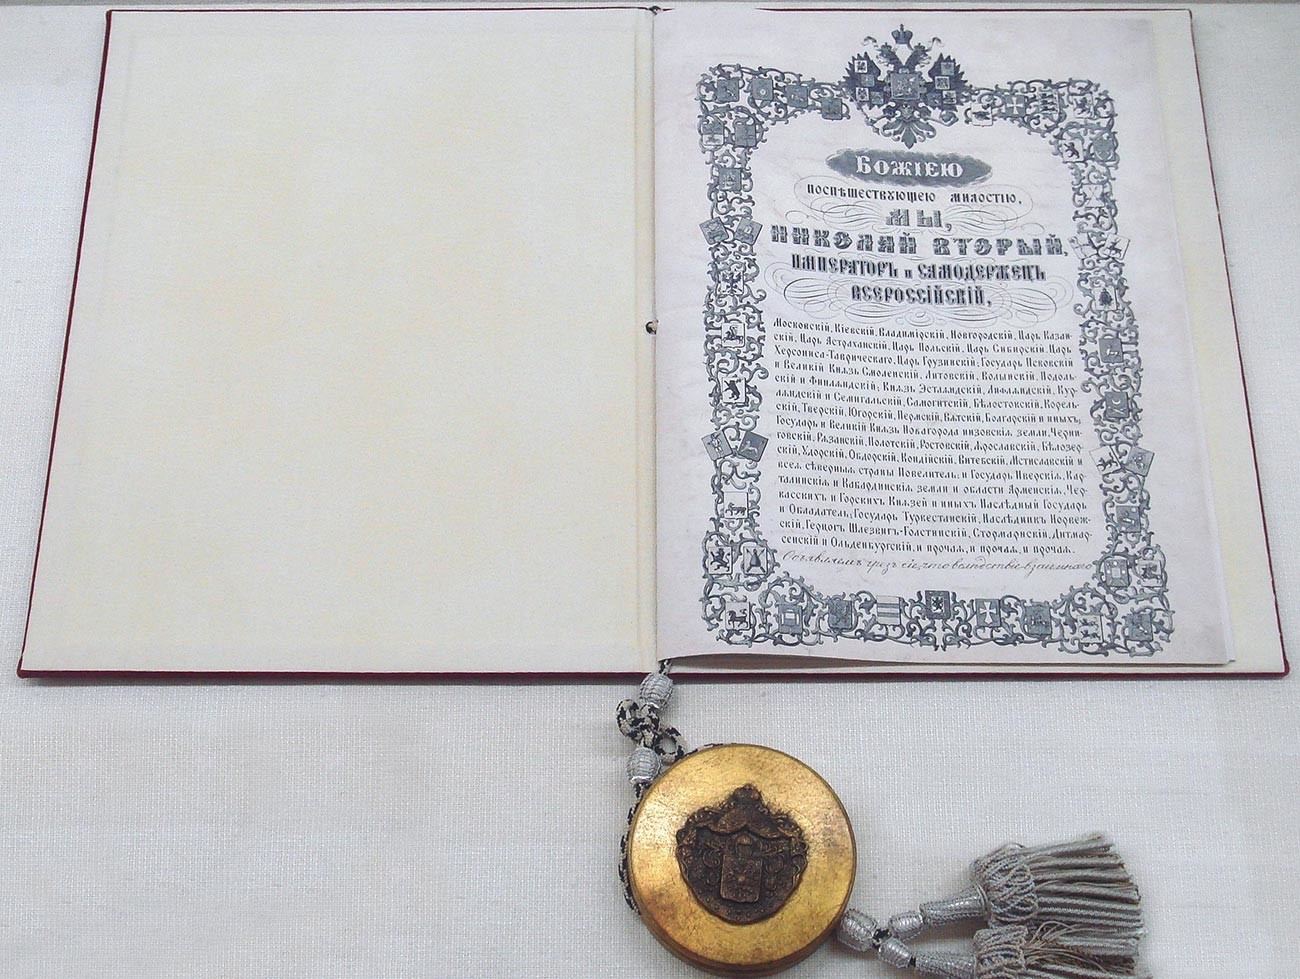 Ratifikacija portsmouthskega mirovnega sporazuma med Japonsko in Rusijo, 25. novembra 1905